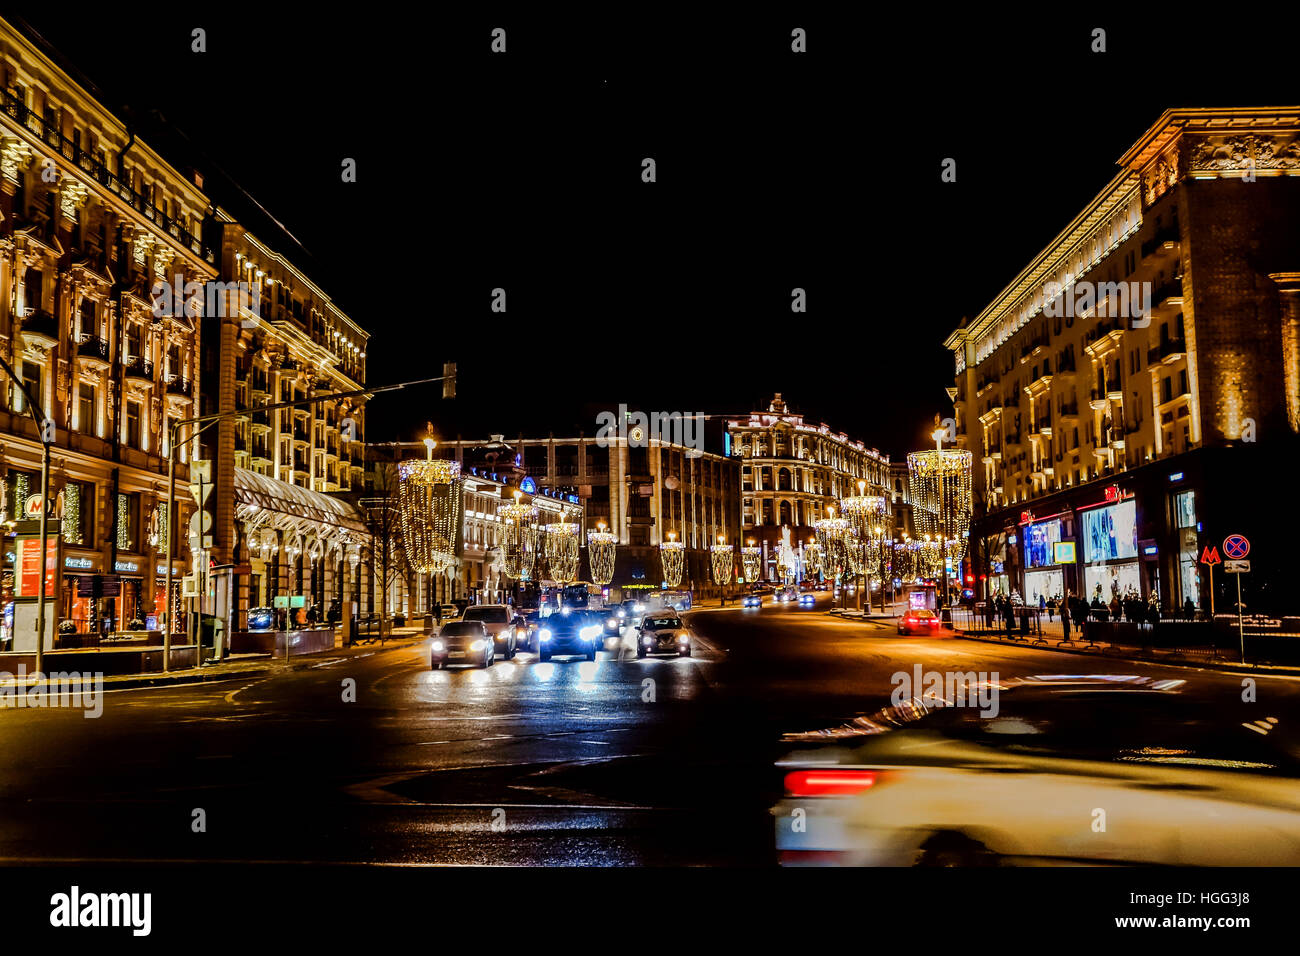 Moskau, Russland - Januar 2017: Die Hauptstraße von Moskau - Tverskaya, sieht immer spektakulär in der Weihnachtsnacht auf 8. Januar 2017 Stockfoto